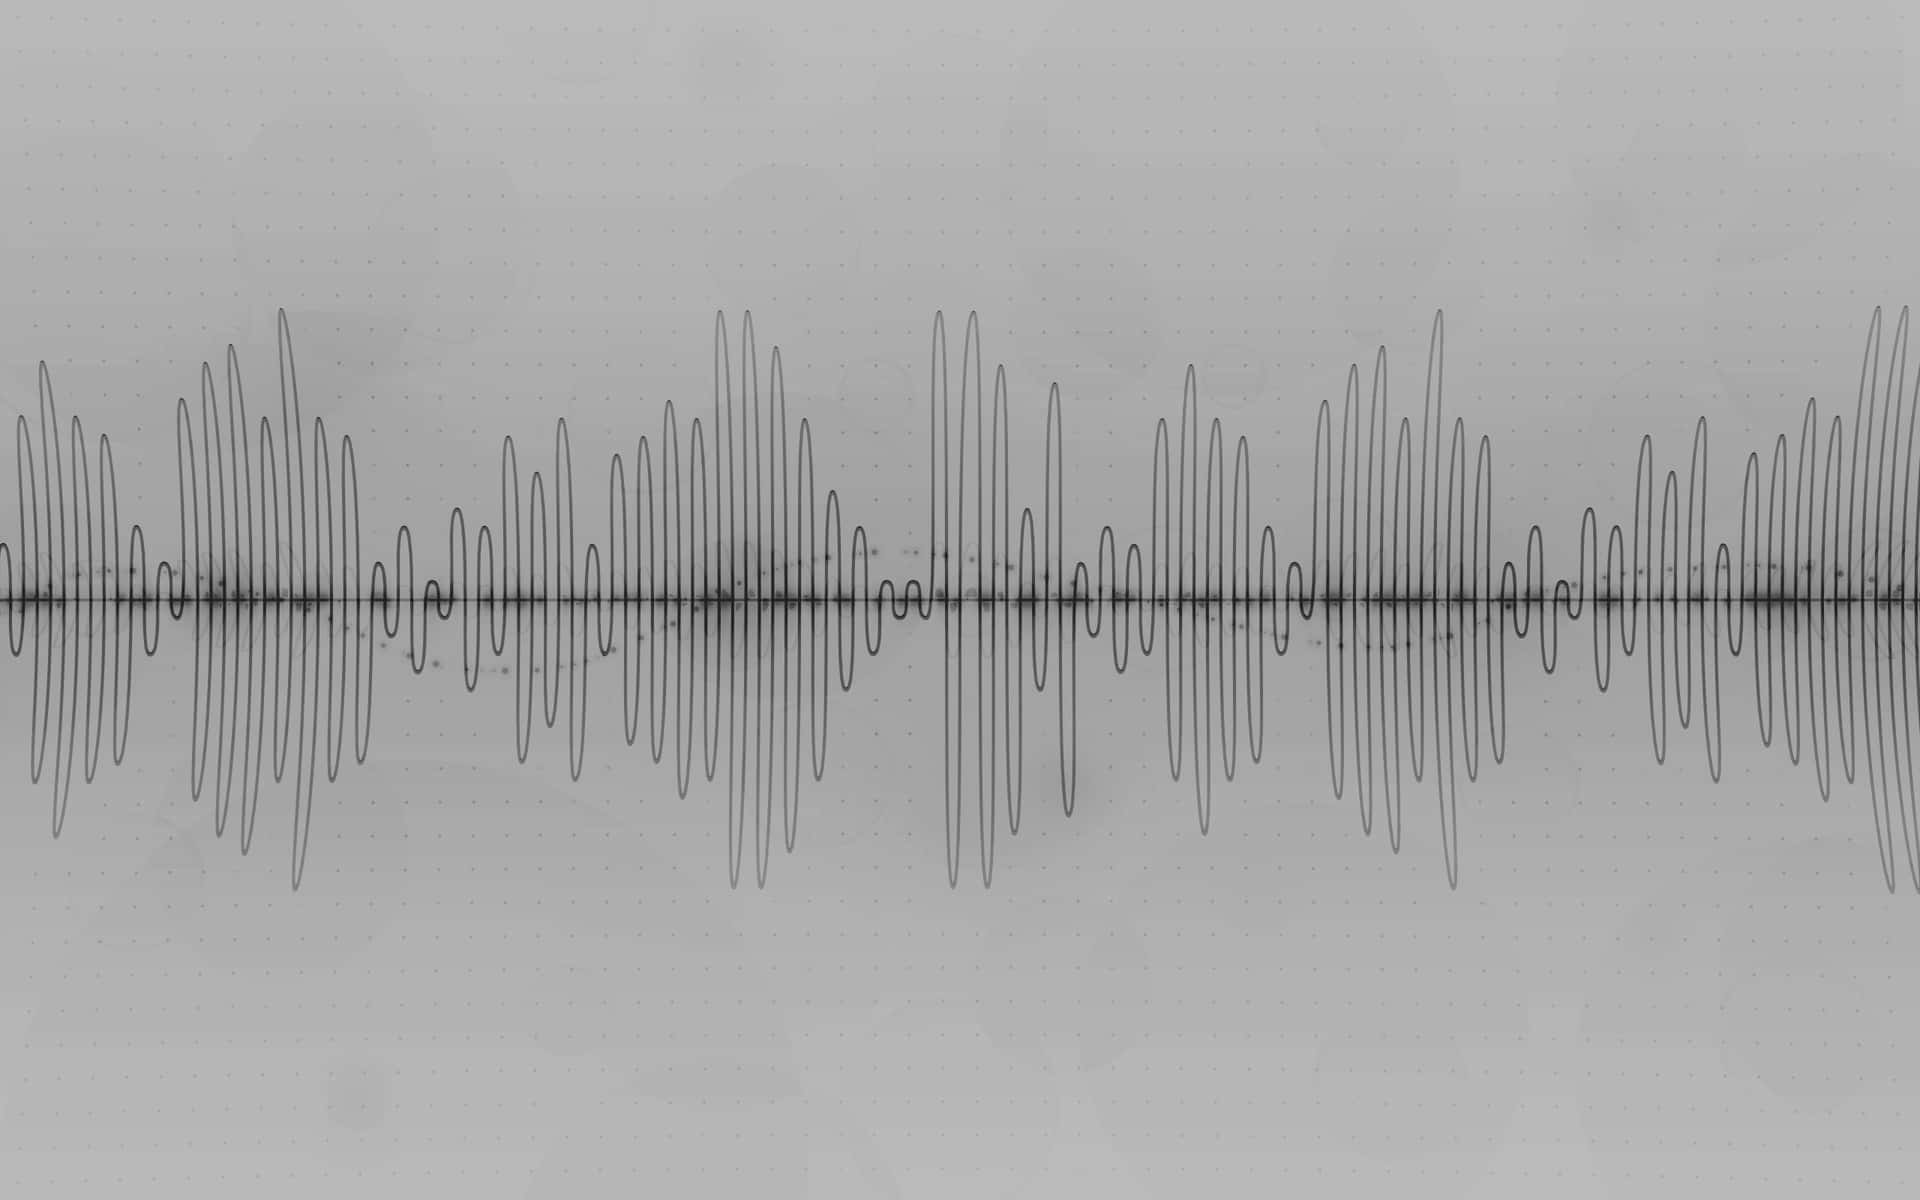 Audio Waveform Background